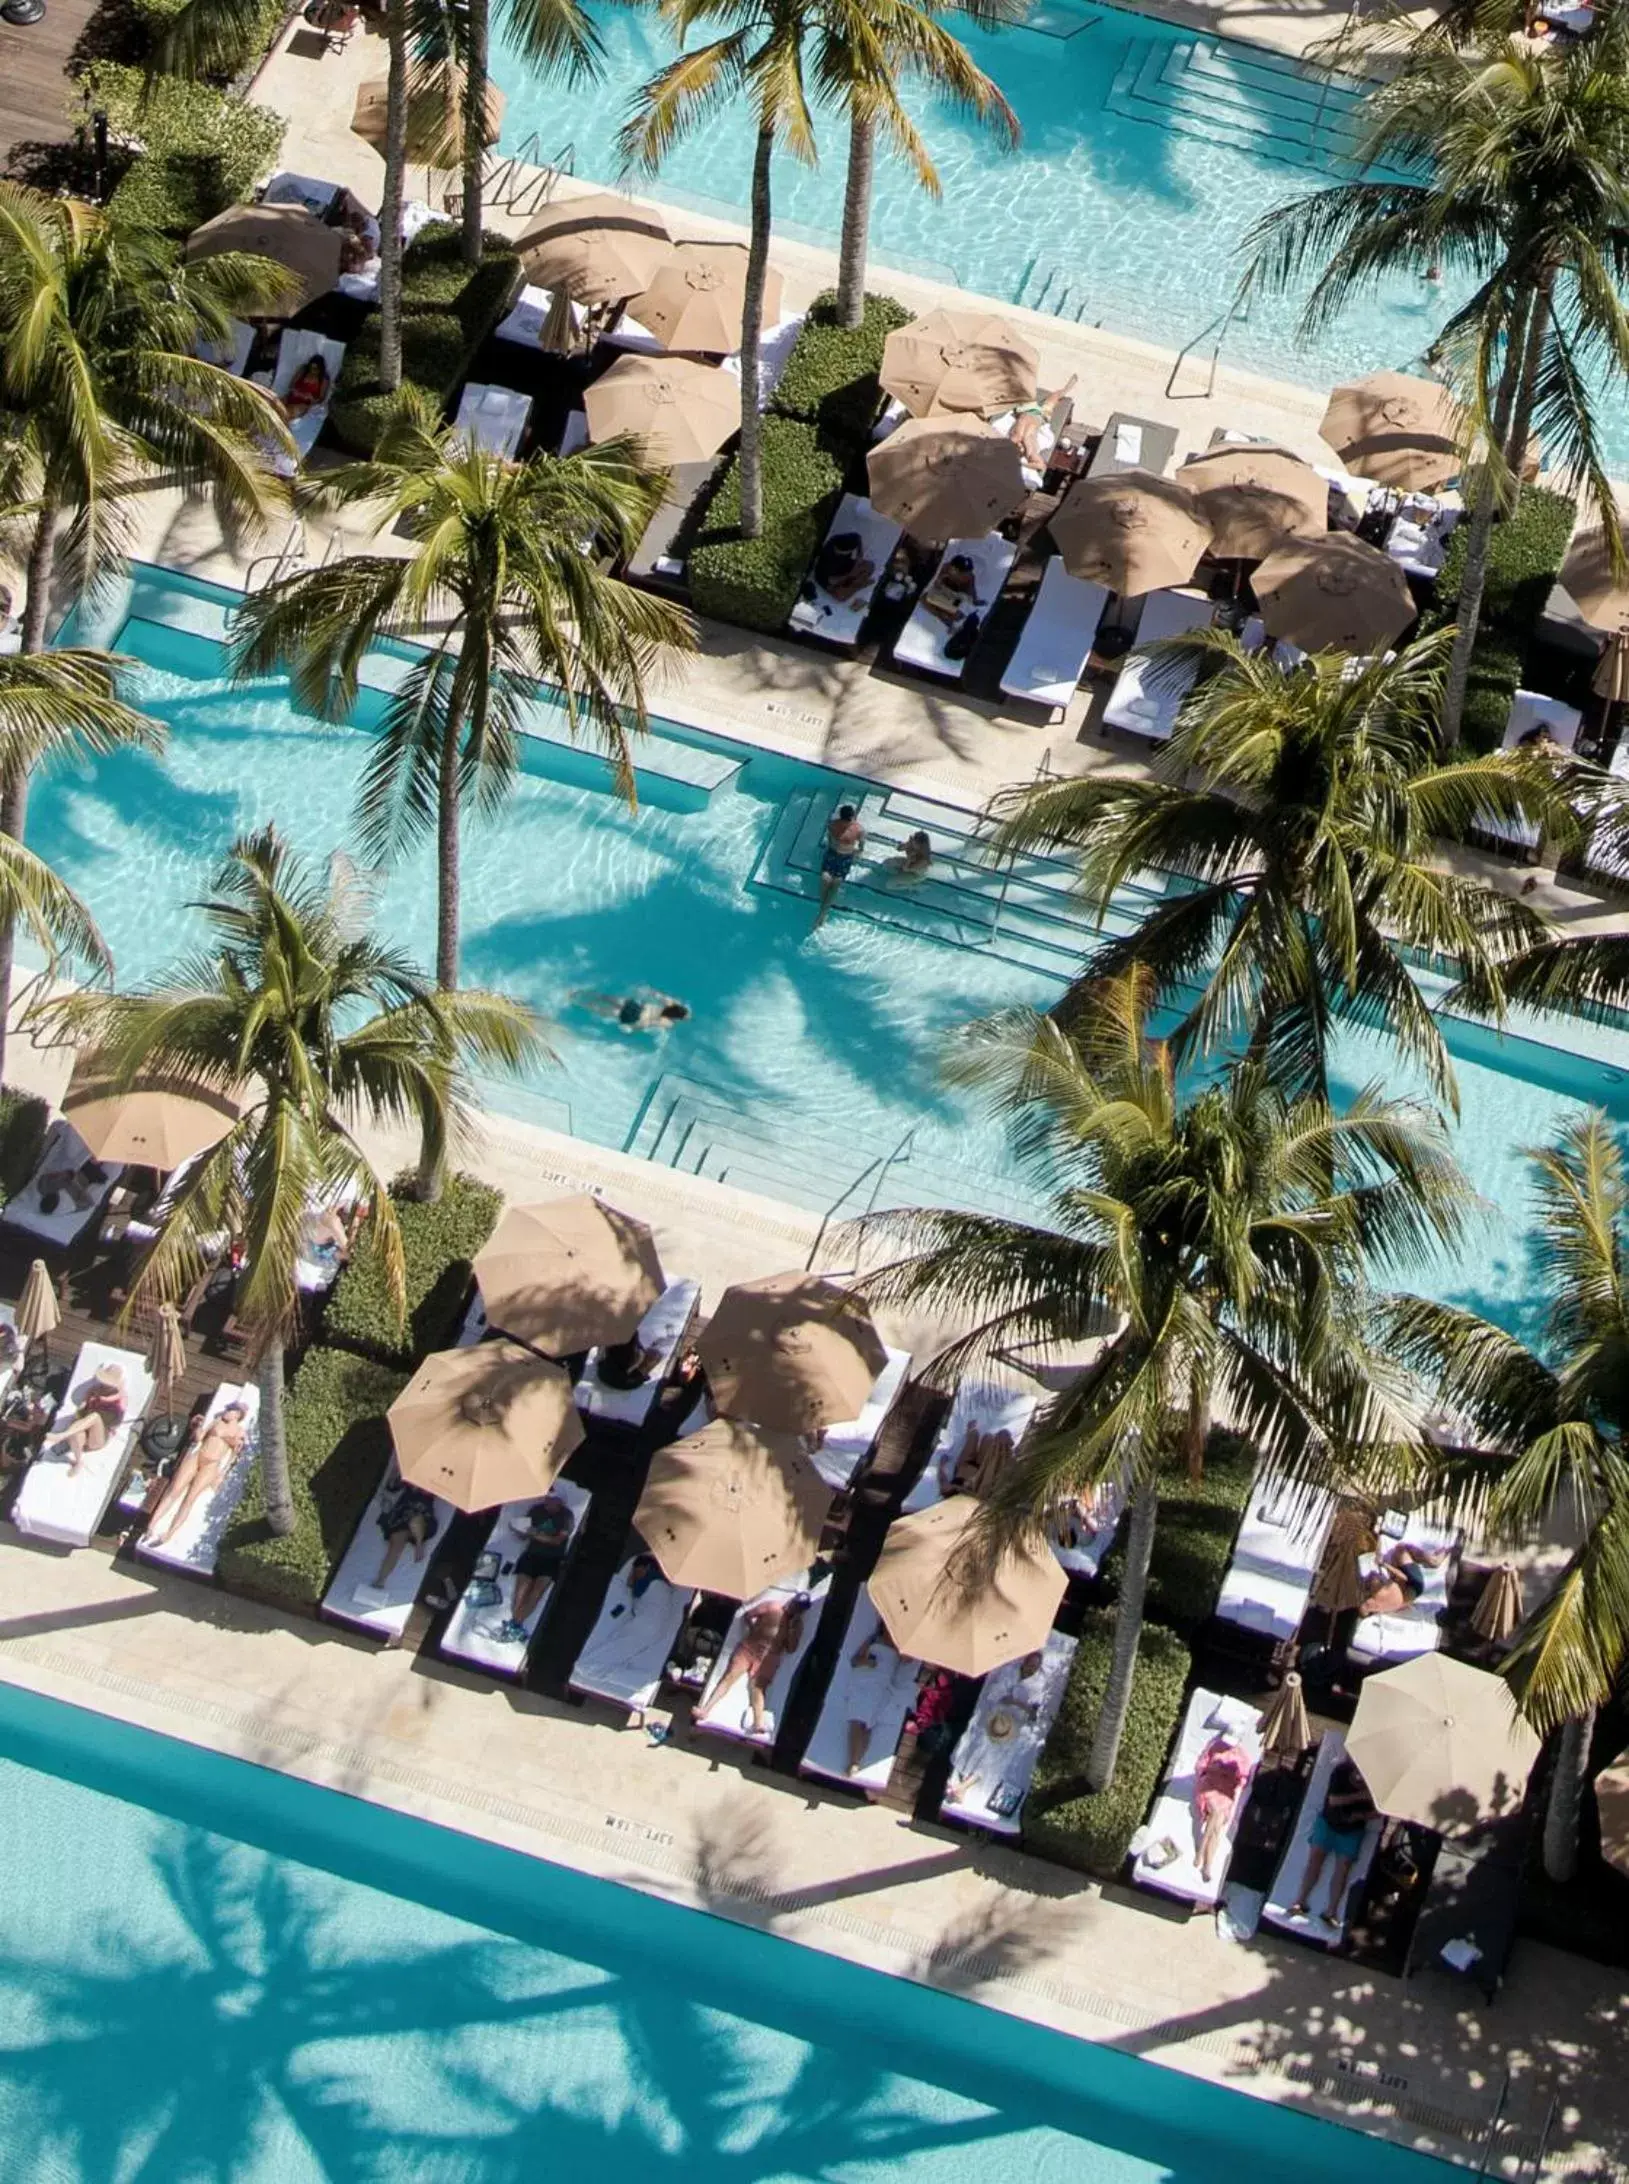 Day, Pool View in The Setai, Miami Beach